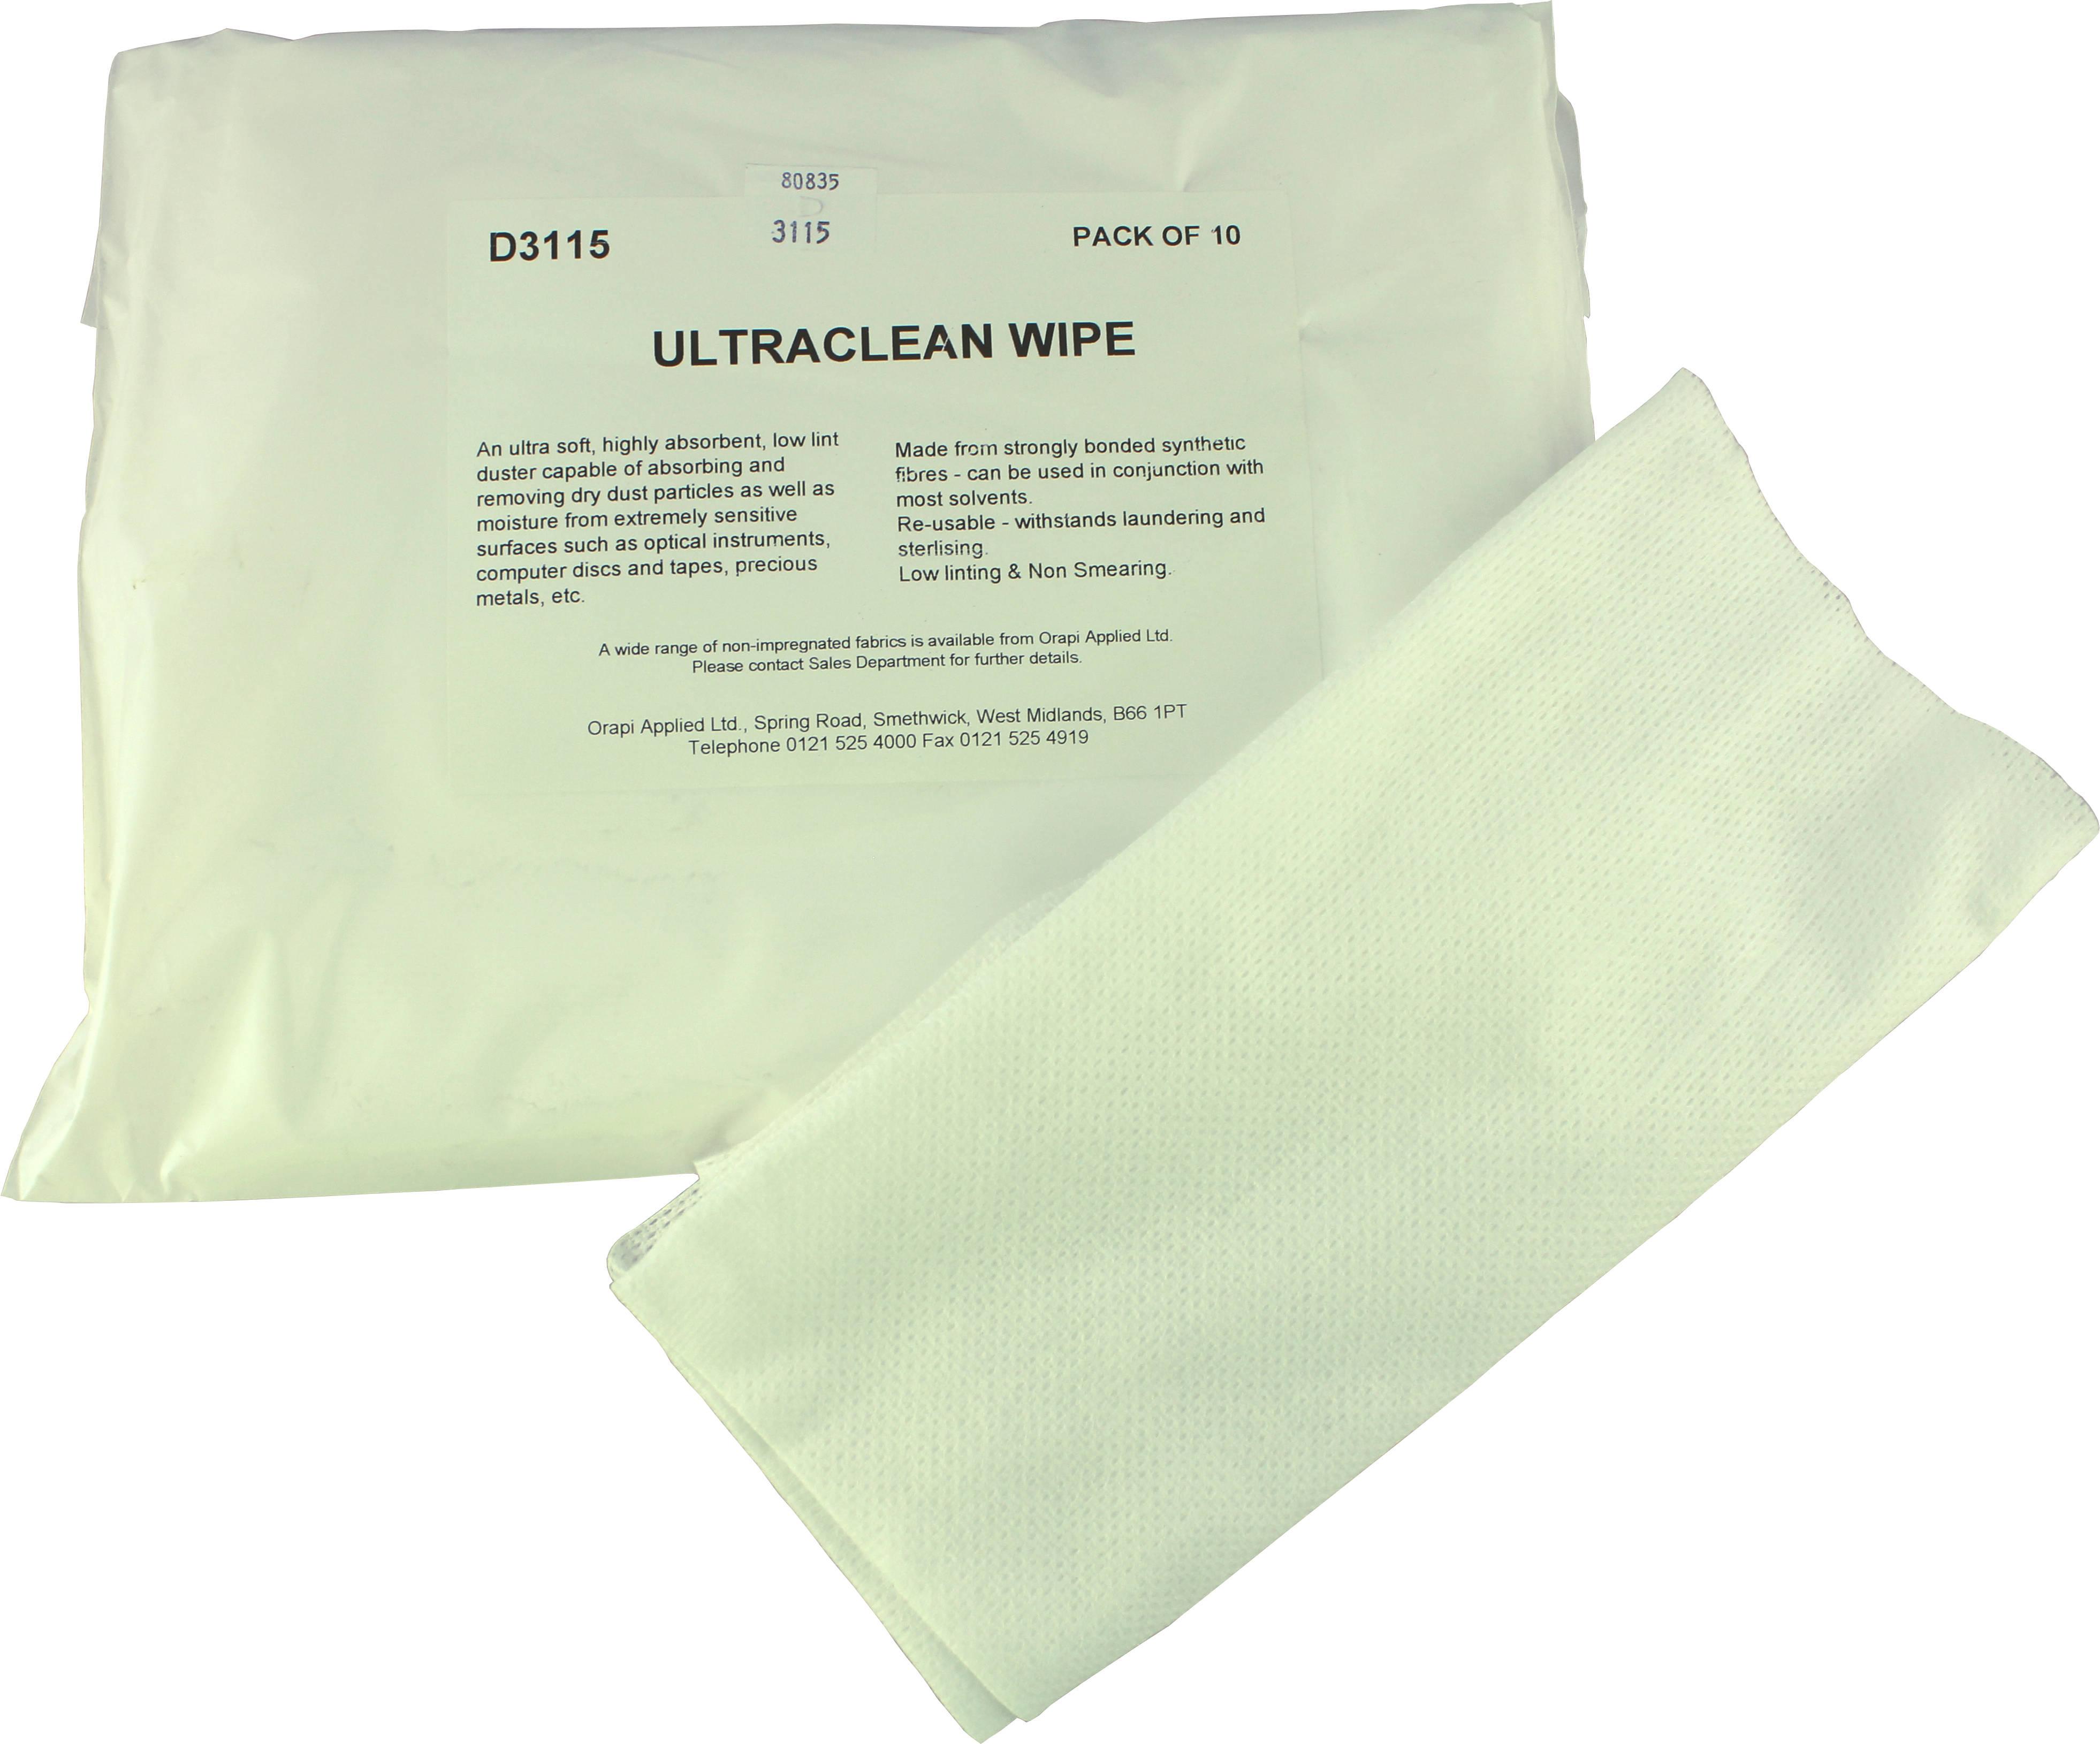 Ultraclean Wipe Pack